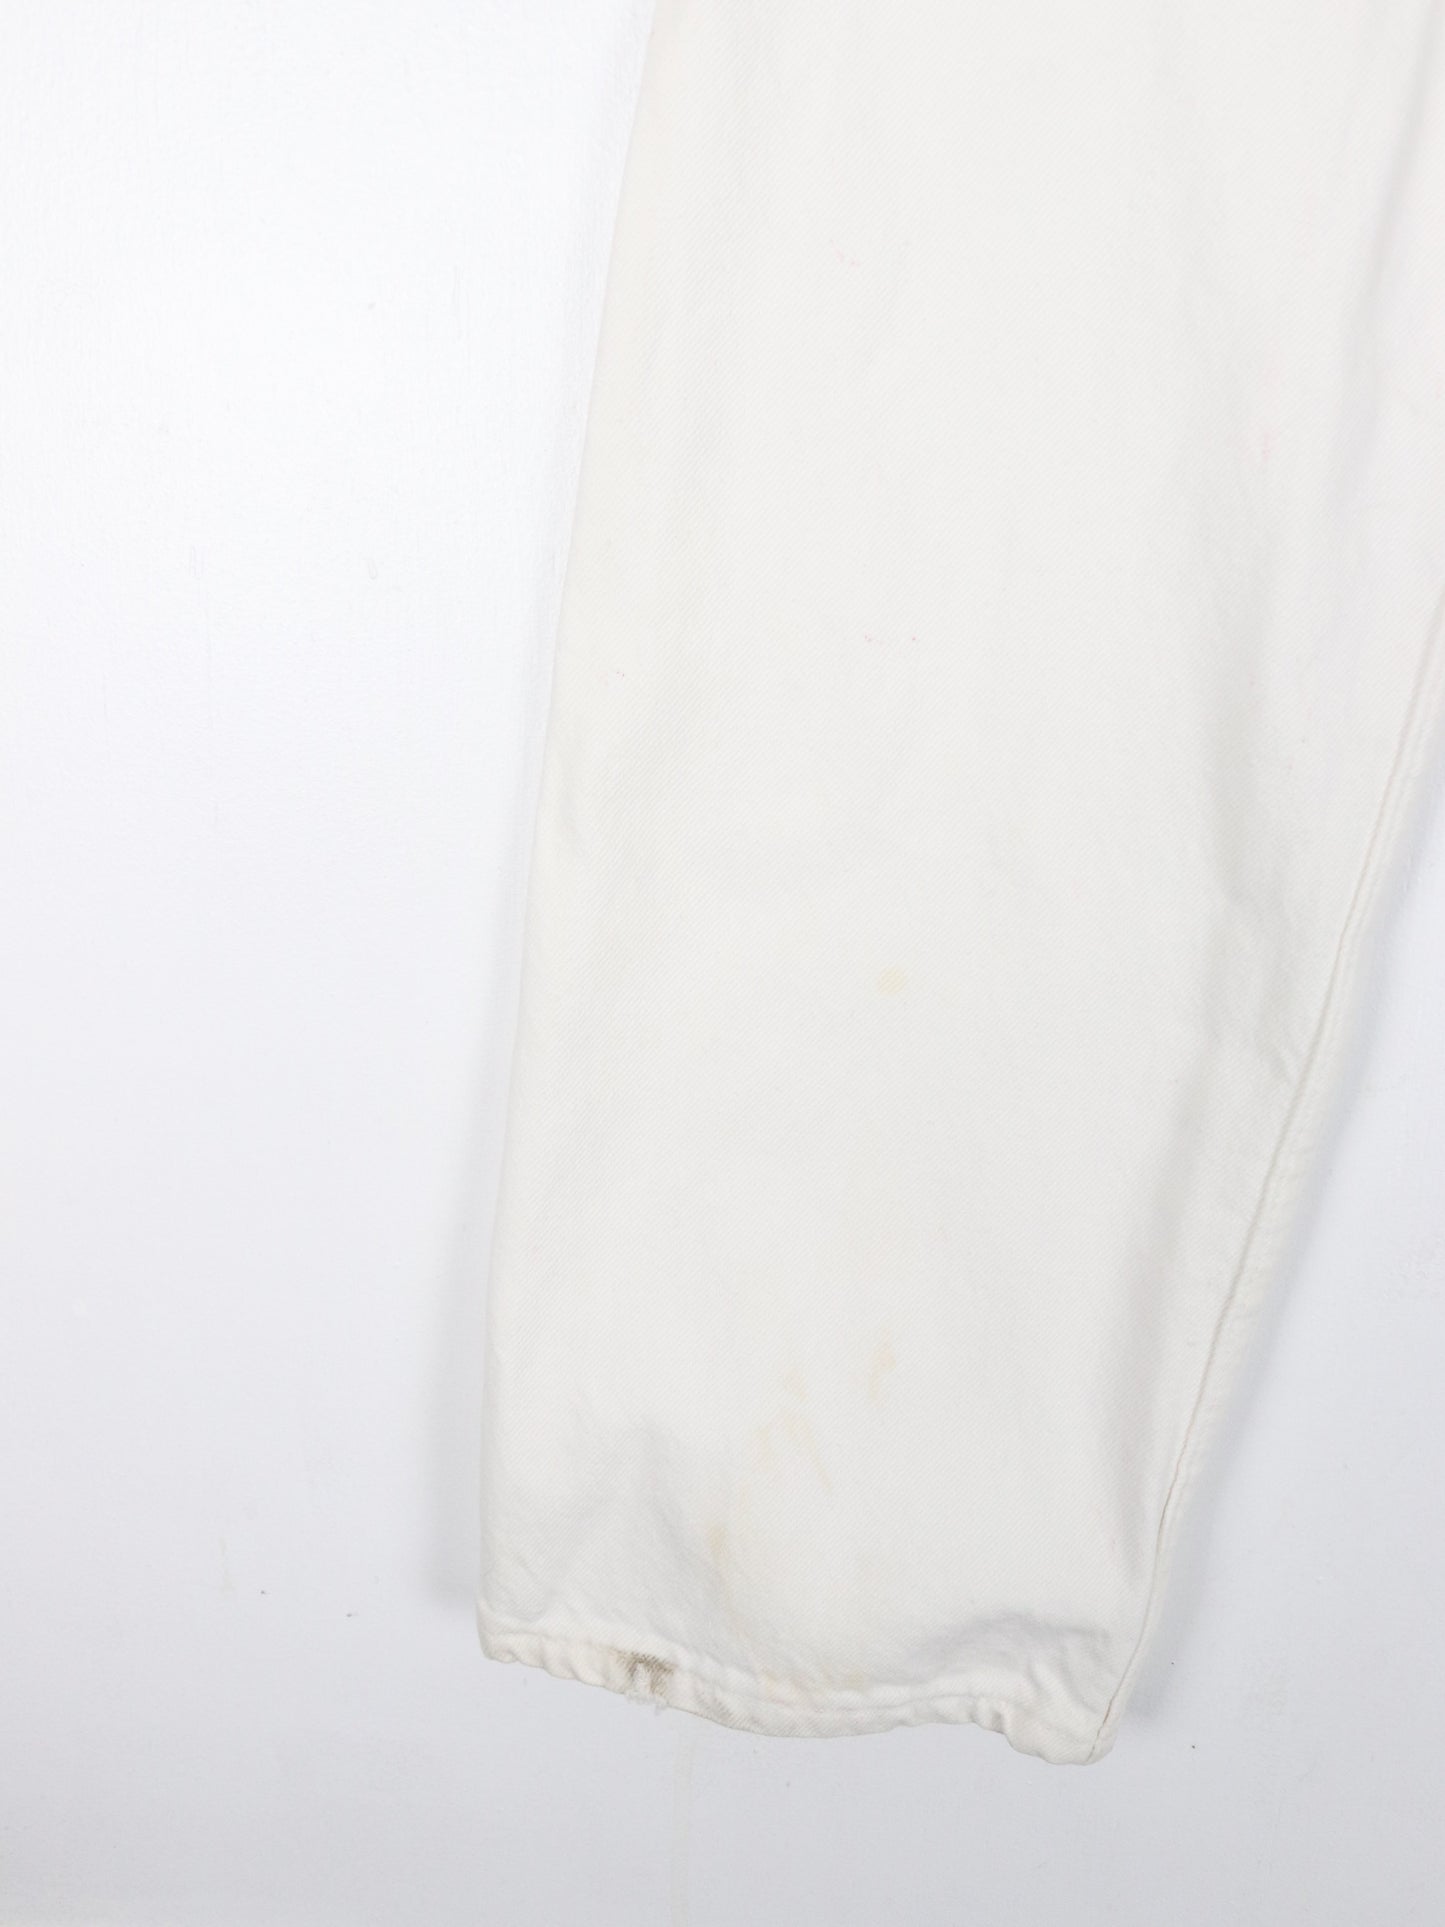 Vintage Levi's Pants Fits Mens 28 x 31 White 501 Original Fit Denim Jeans